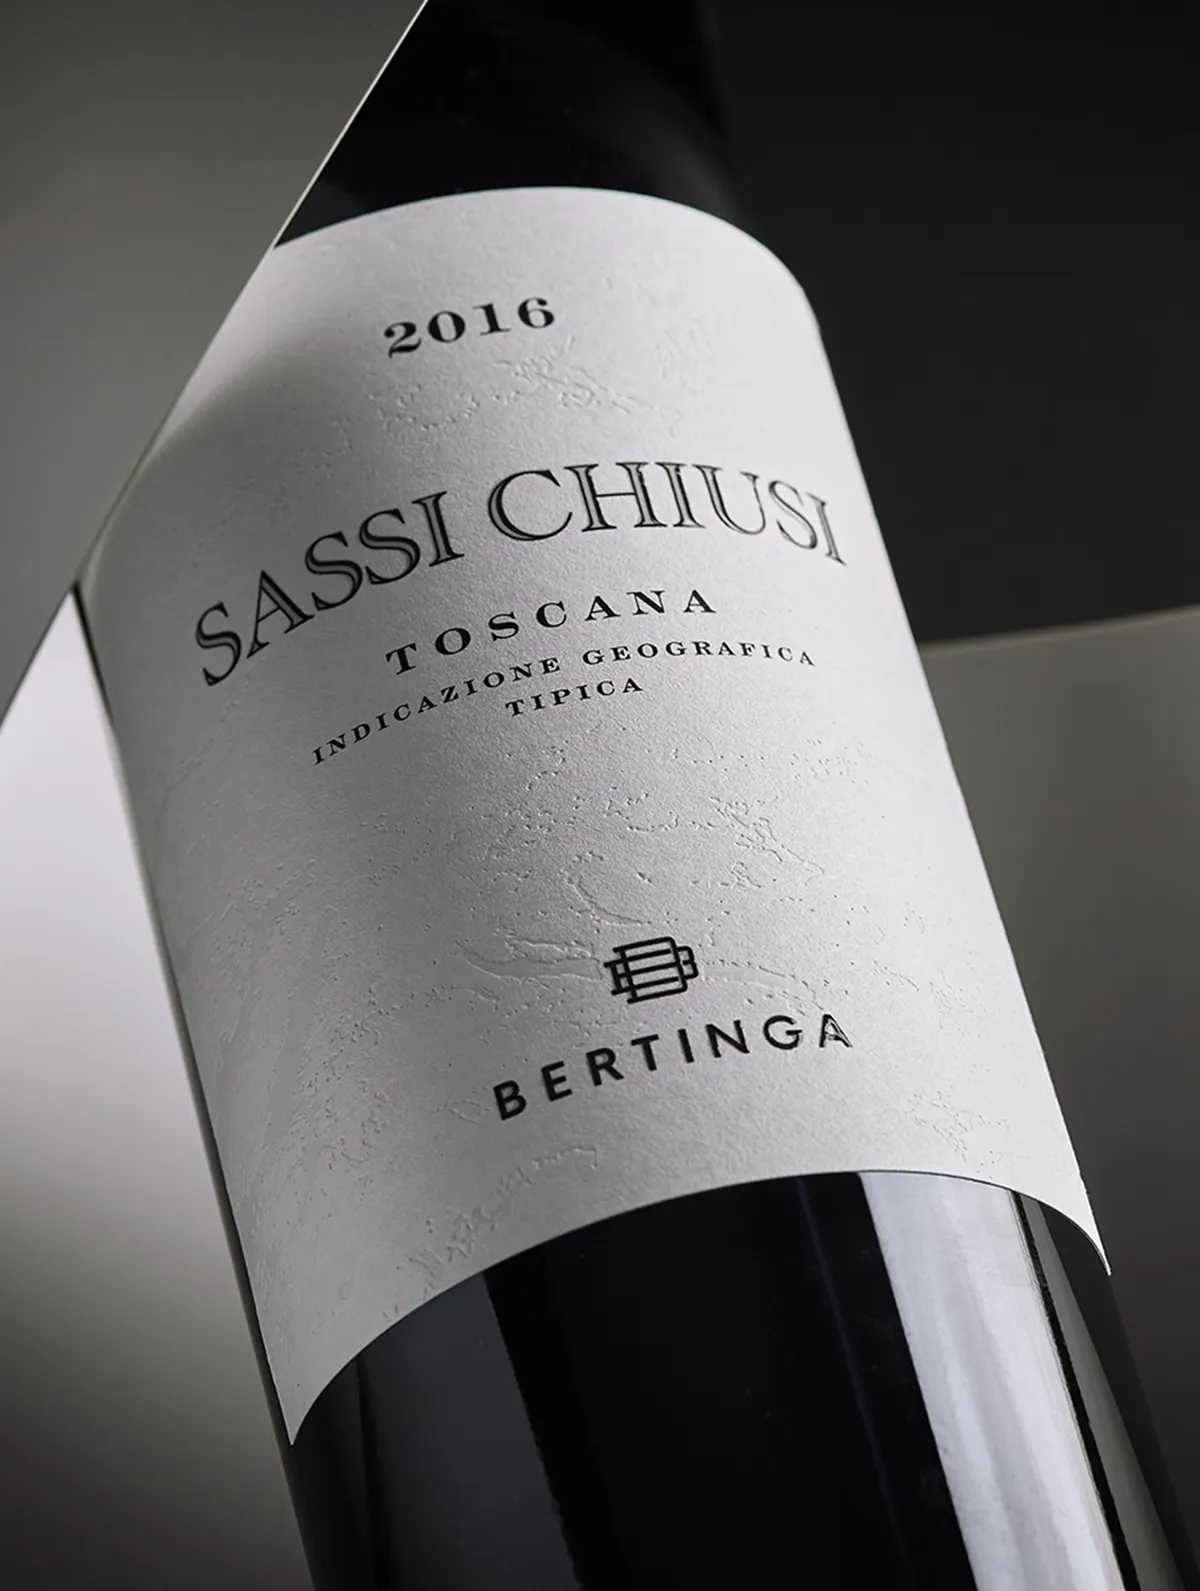 Bertinga - Abbiamo progettato le migliori etichette di un vero vino toscano. - By HDG